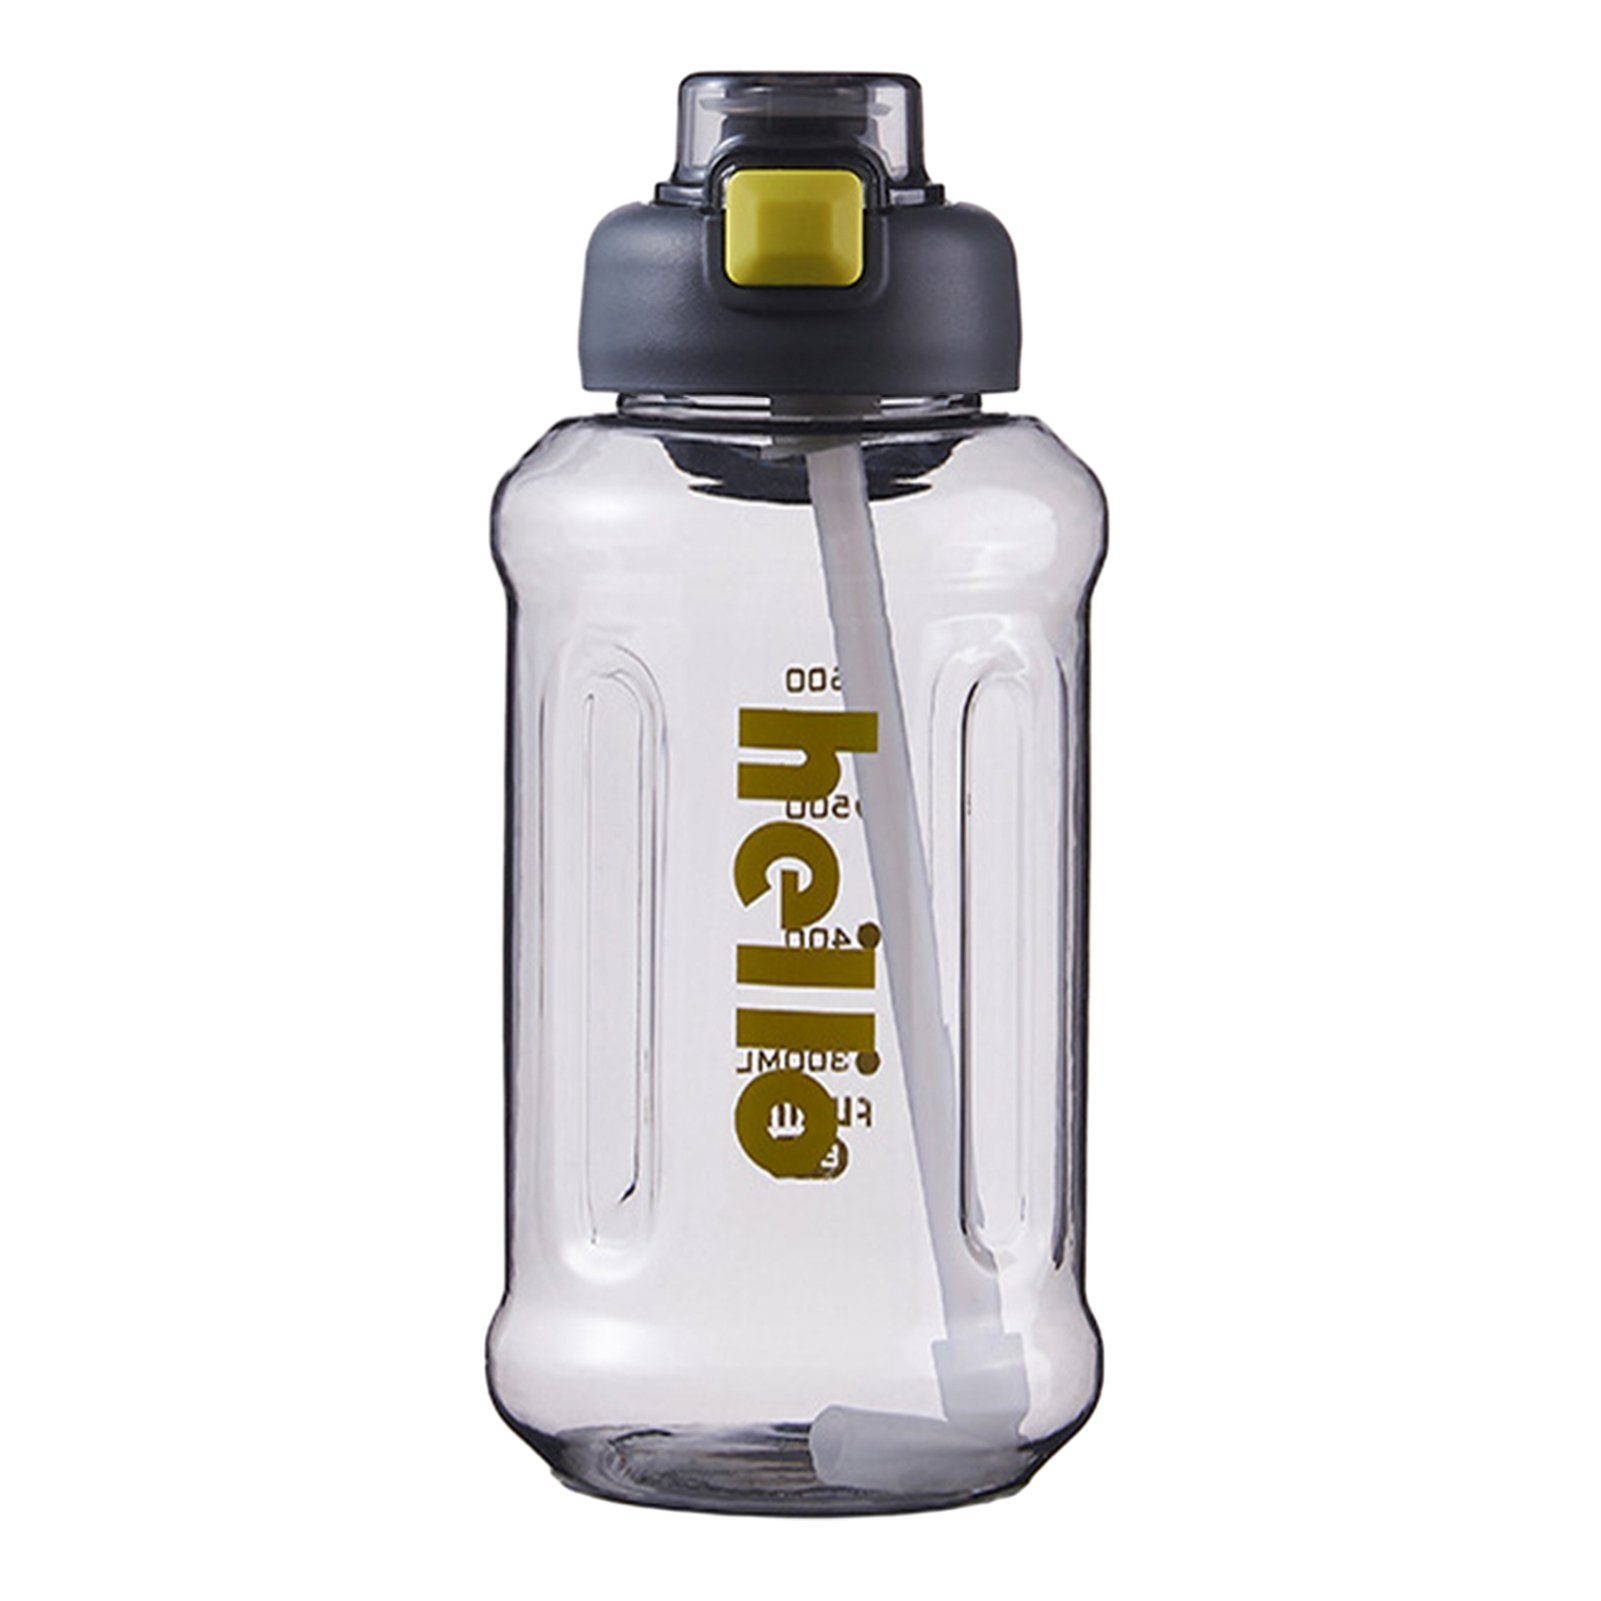 Blusmart Trinkflasche Tragbarer Stroh-Wasserbecher Mit Griff, Hoher Kapazität, Versiegelter, Trinkflasche dark grey 1000ml